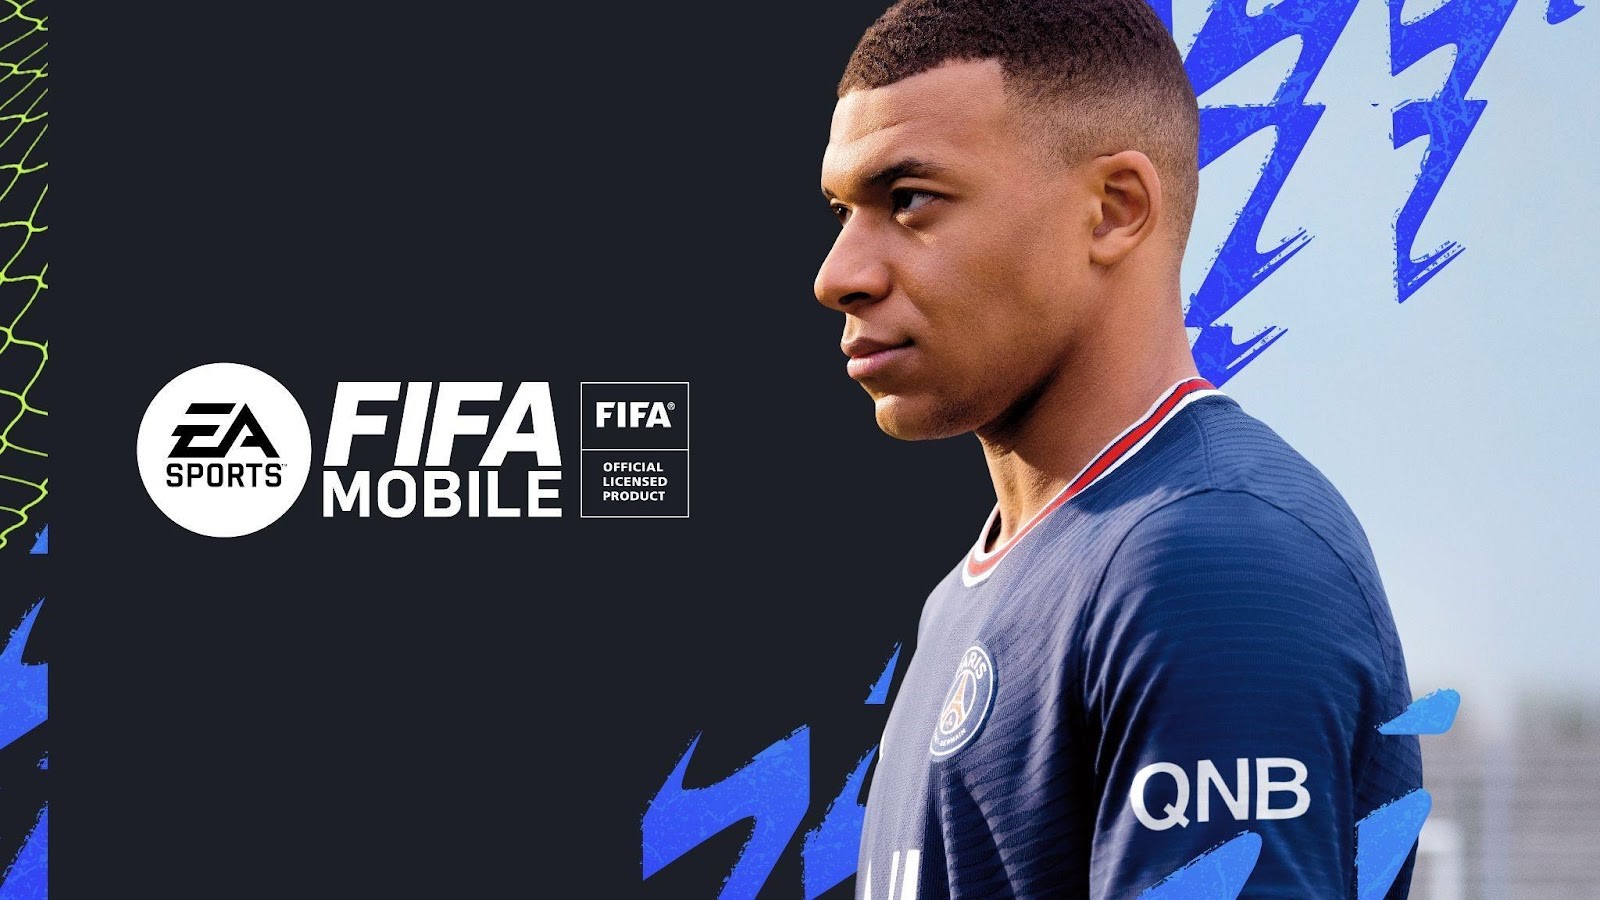 Electronic Arts presentó una amplia actualización para el exitoso juego de dispositivos móviles EA SPORTS FIFA Mobile, la que marca